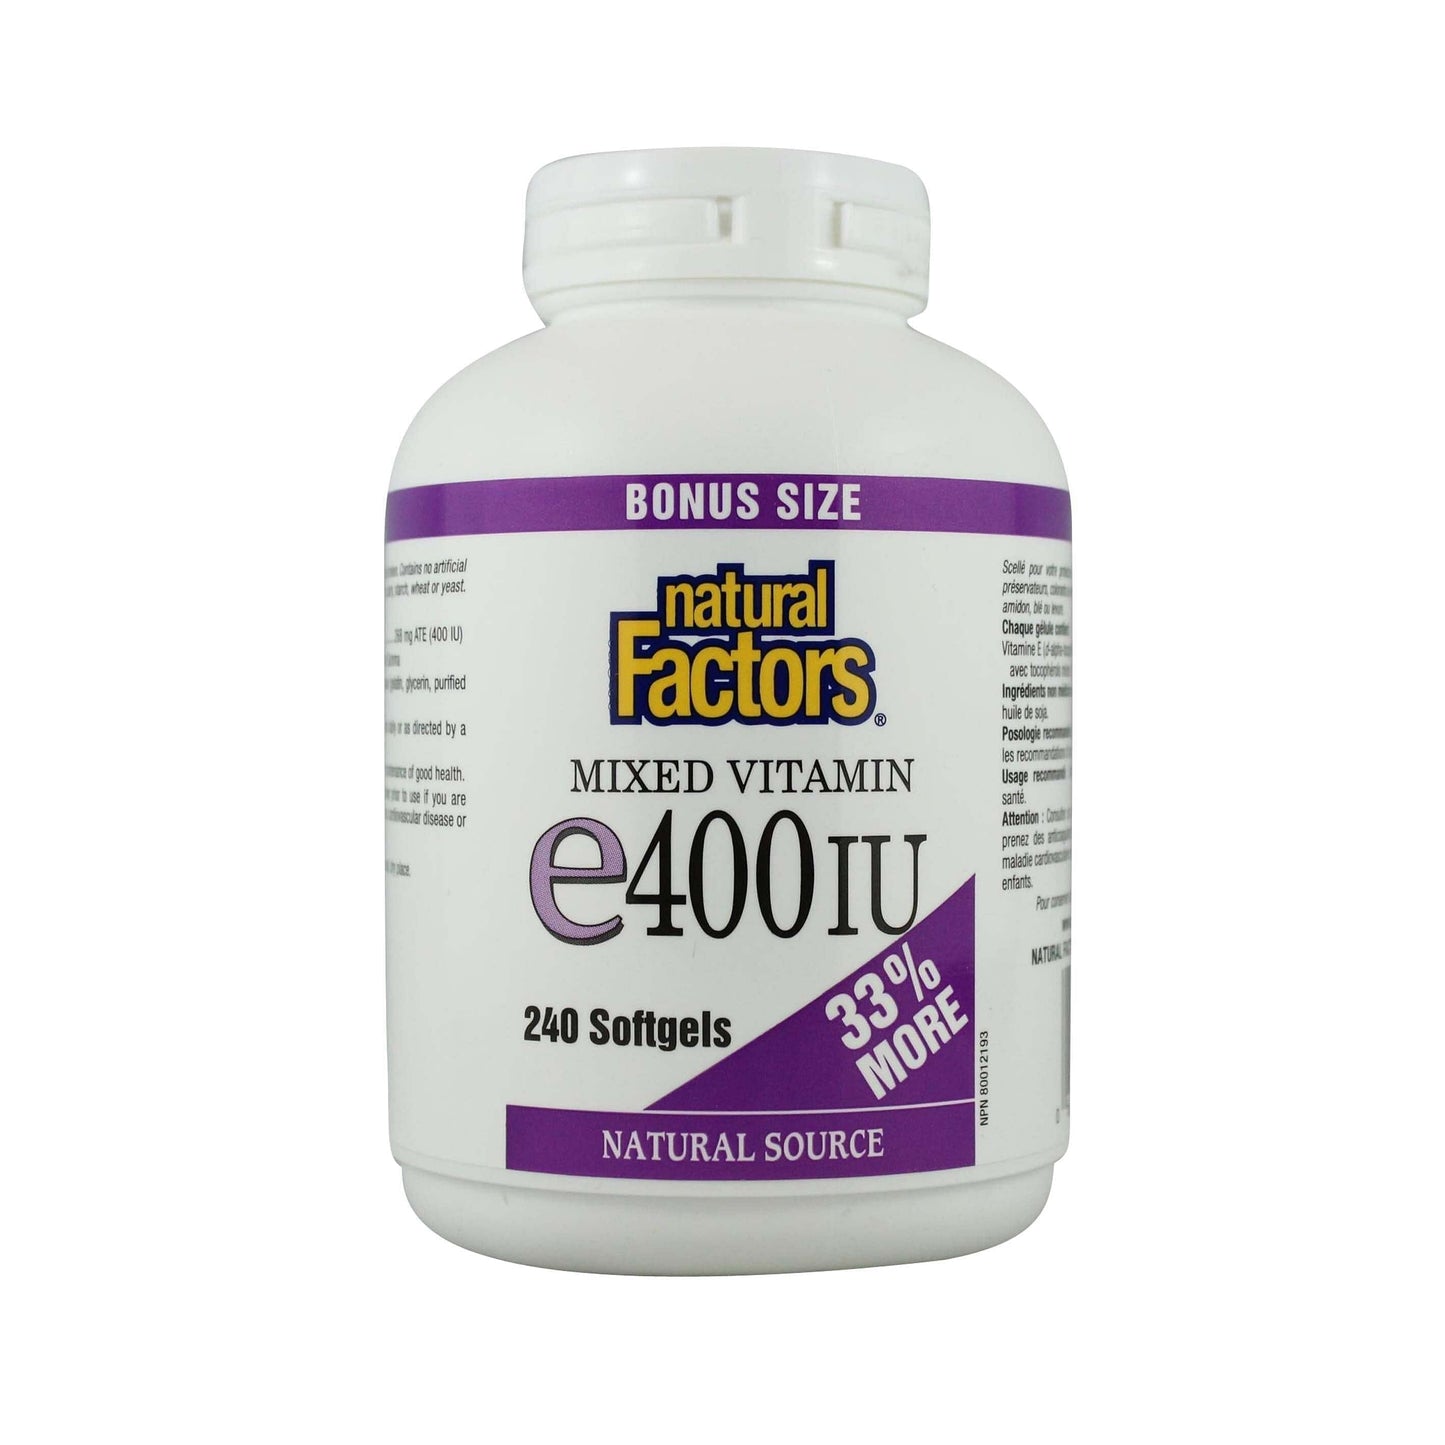 Natural Factors Vitamin E Mixed 400 IU BONUS SIZE, 240 Softgels